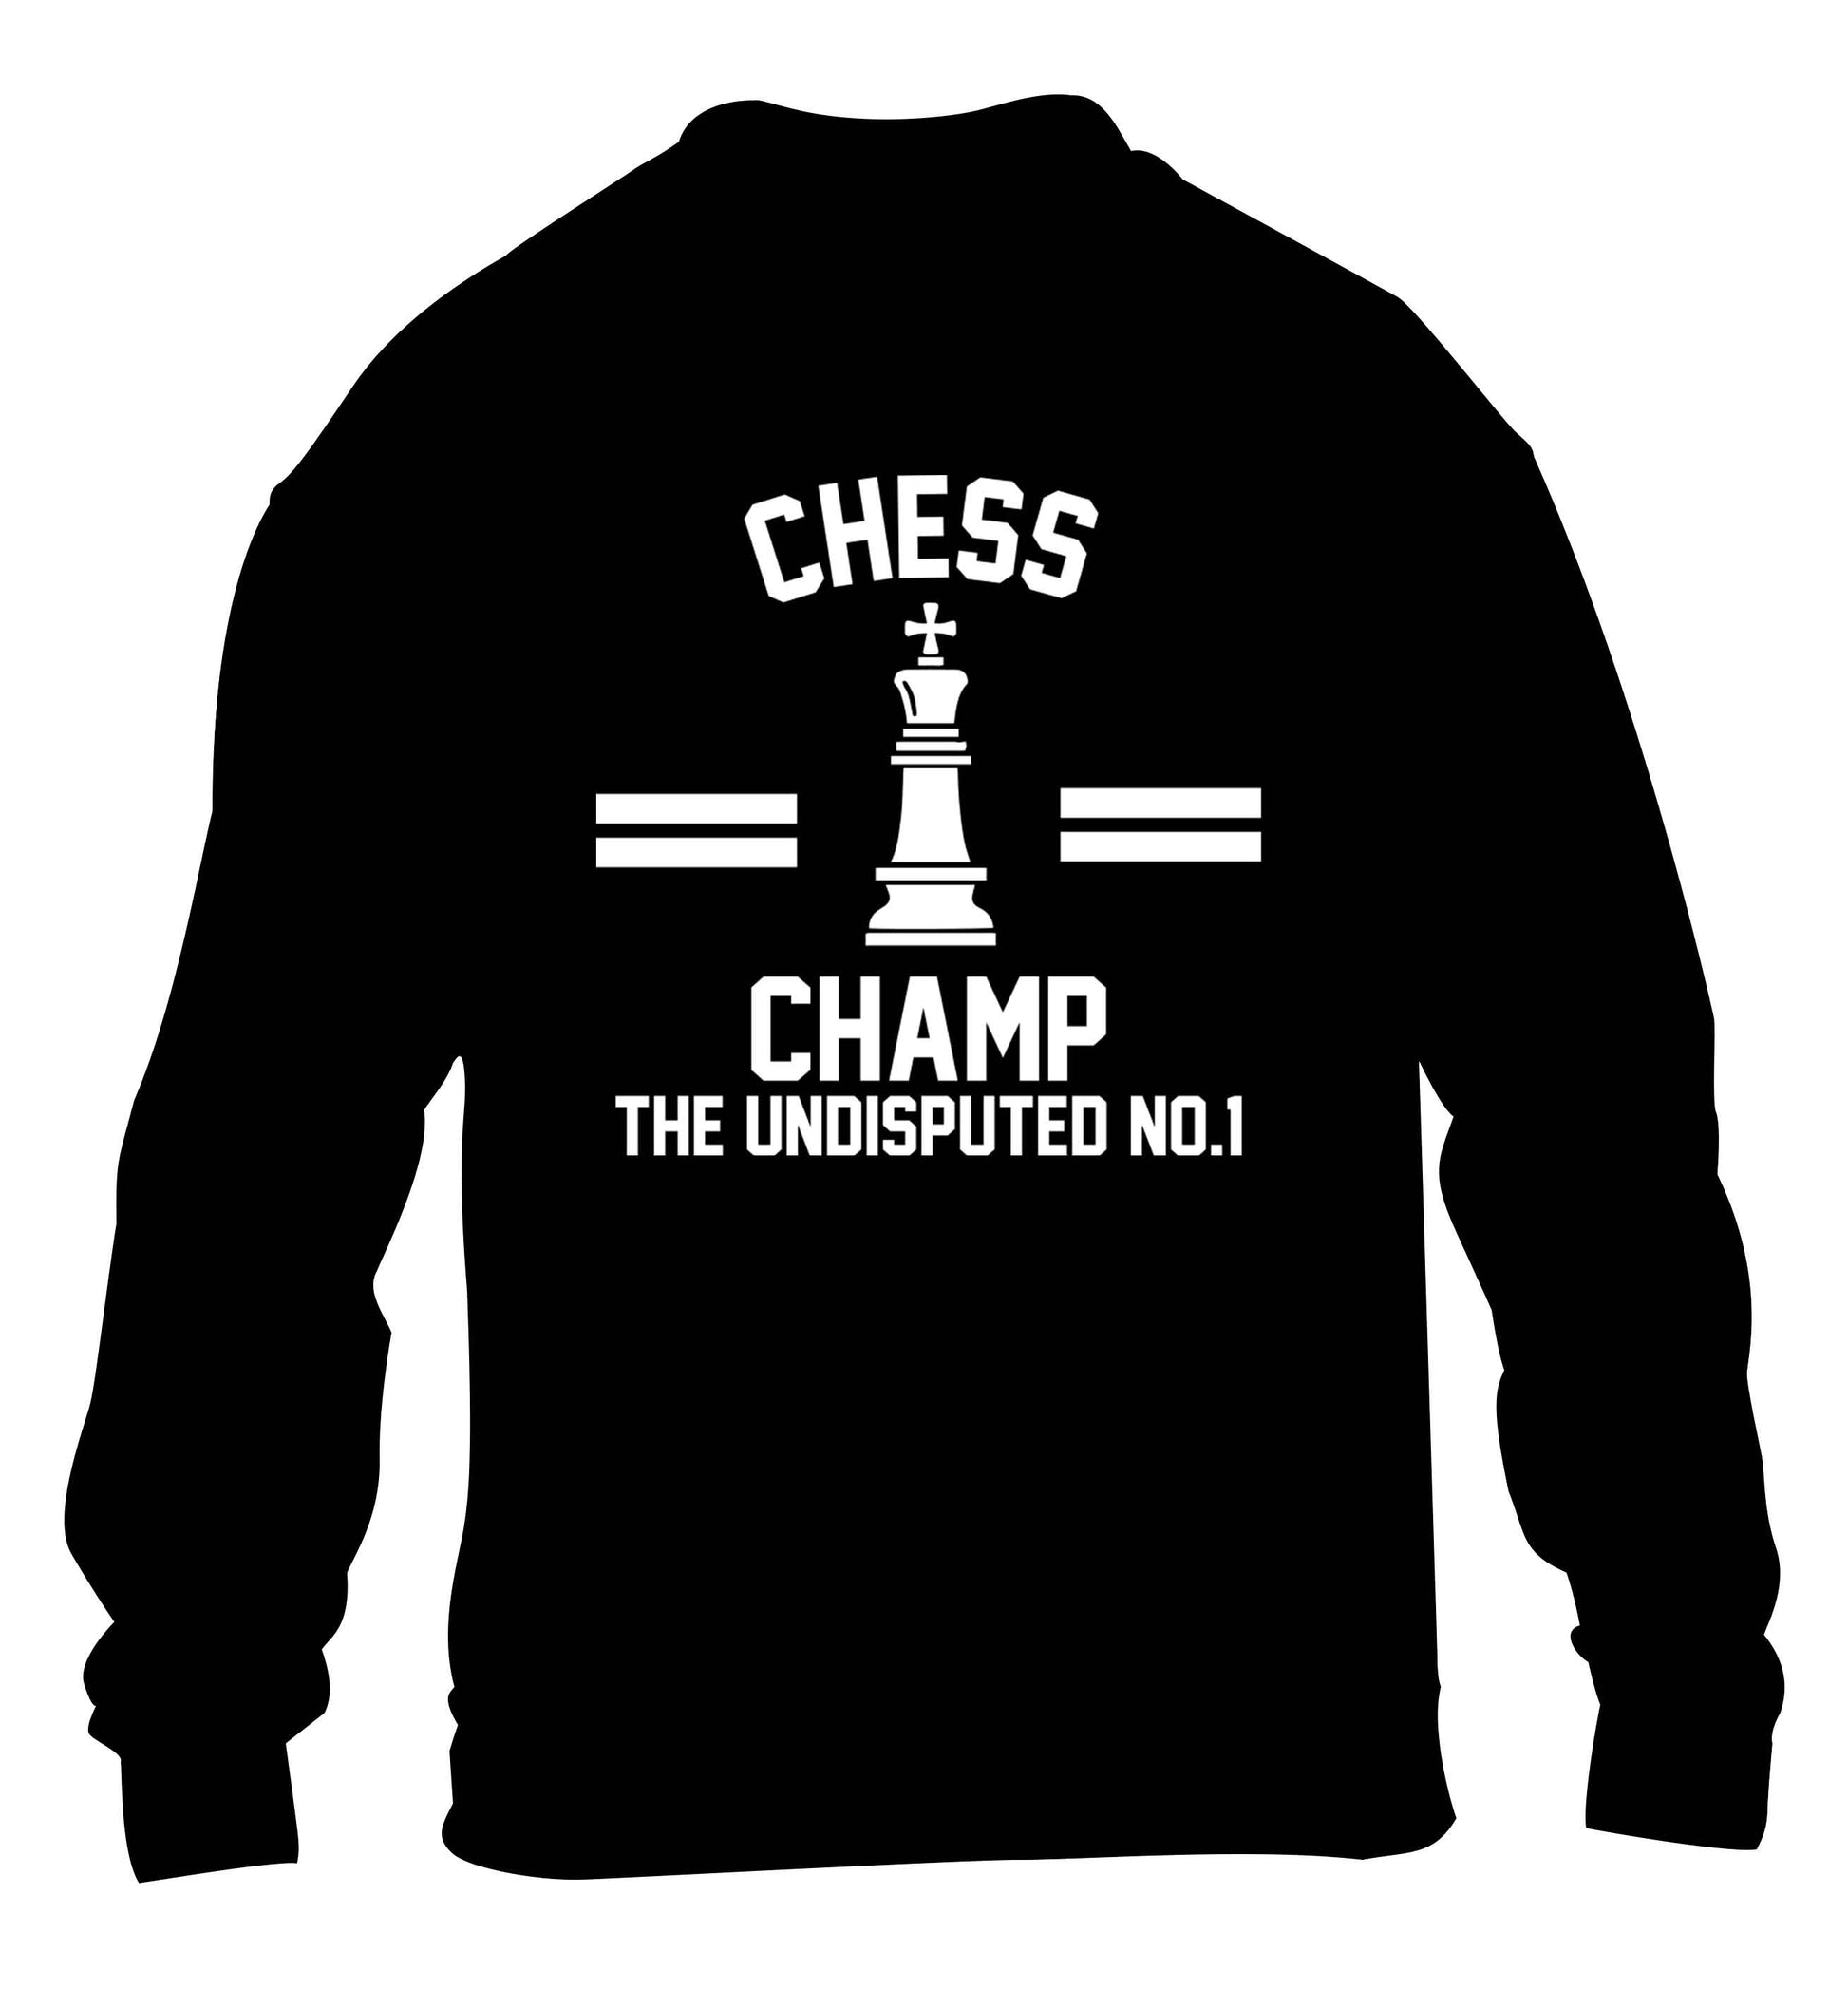 Undisputed chess championship no.1  children's black sweater 12-13 Years